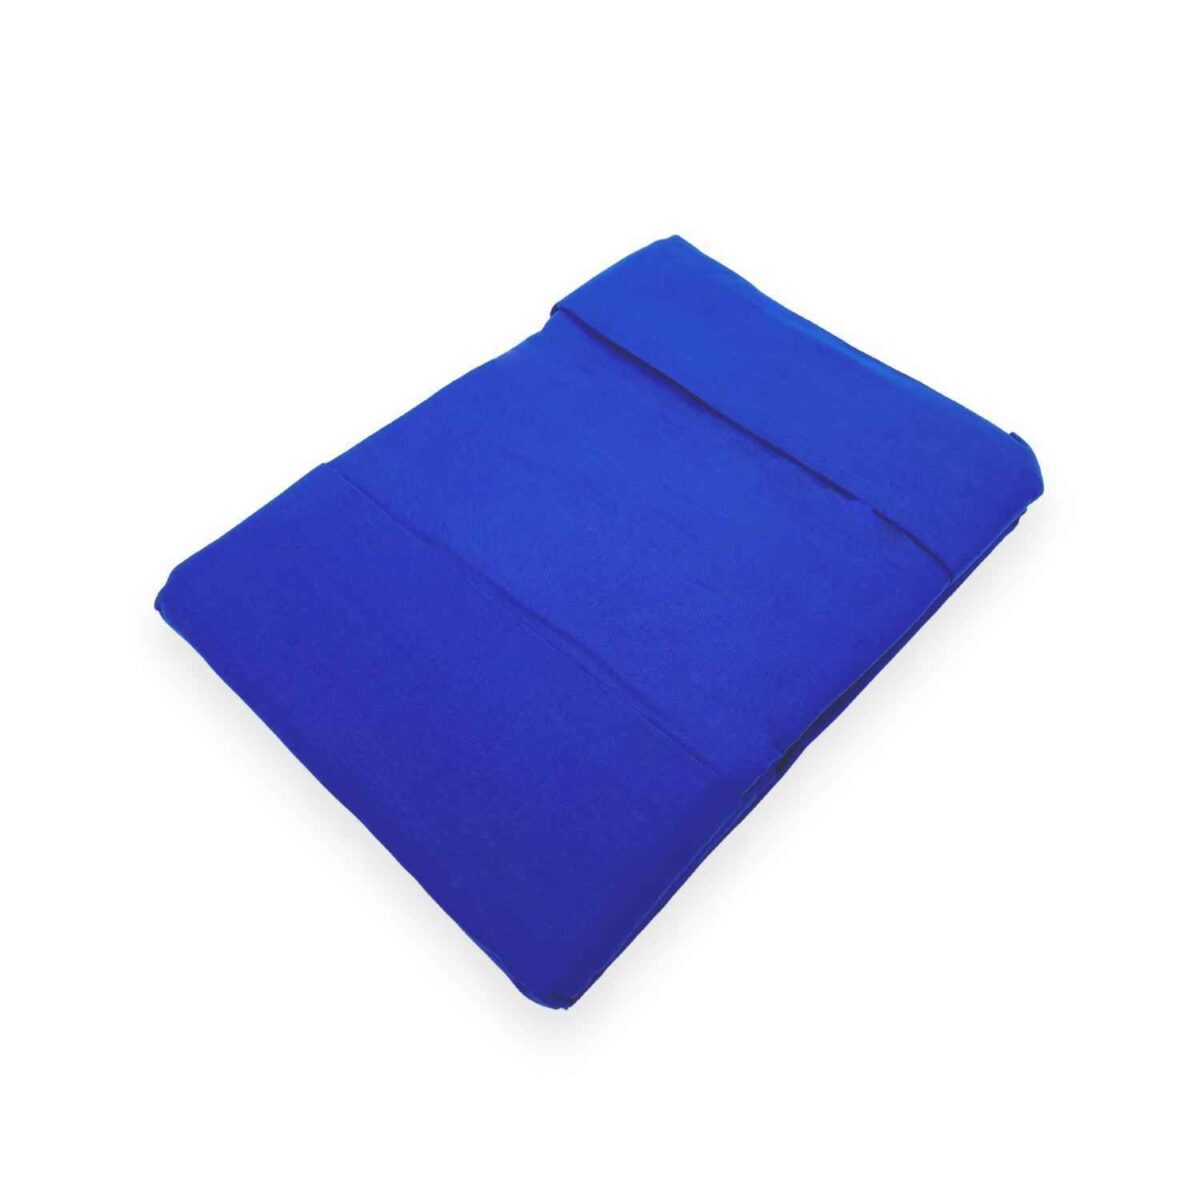 blu-coloratissimi-completo-lenzuola-puro-cotone-tinta-unita-avio-bluette-fold